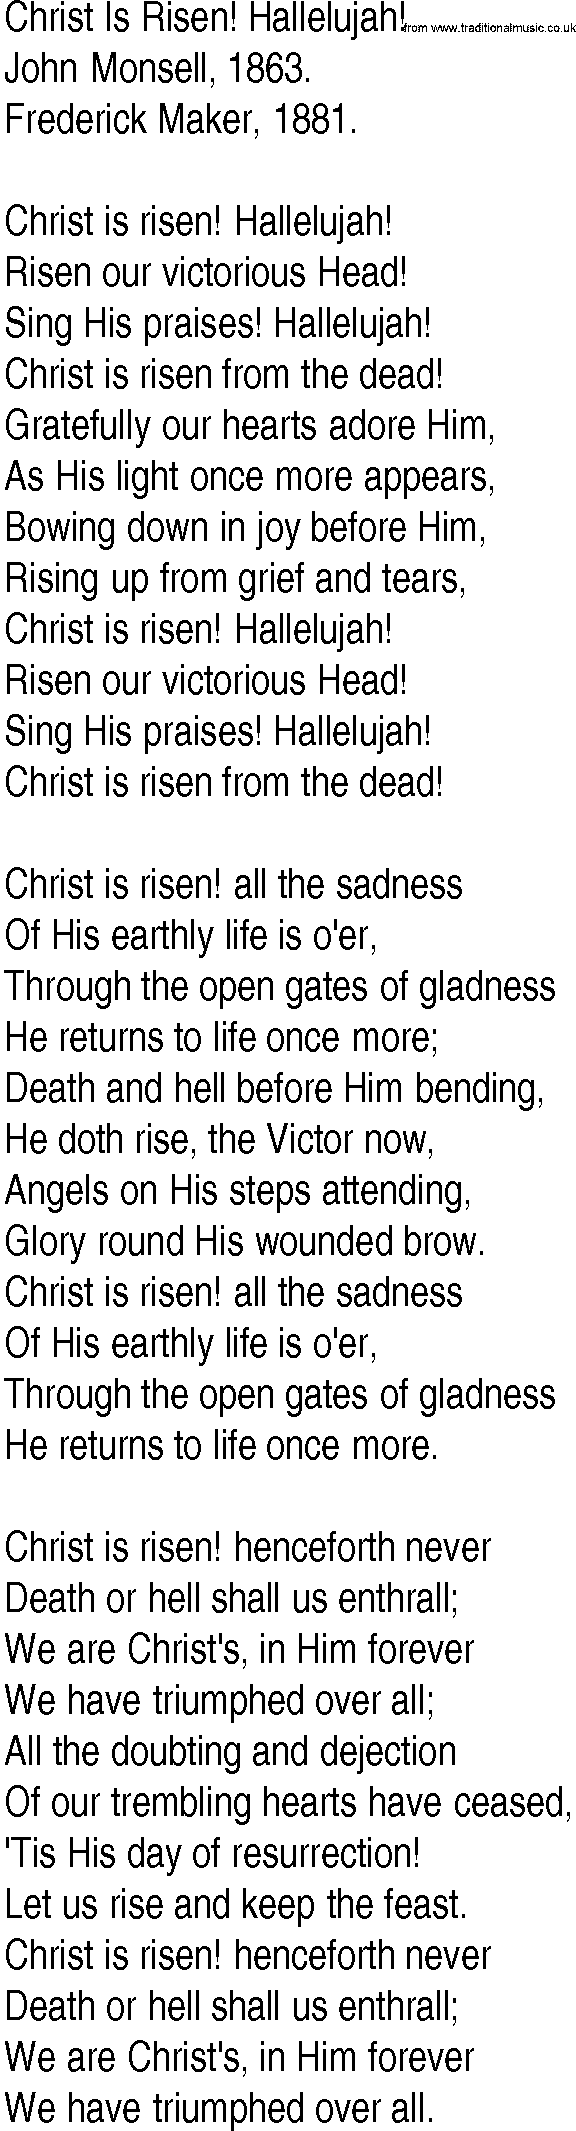 Hymn and Gospel Song: Christ Is Risen! Hallelujah! by John Monsell lyrics